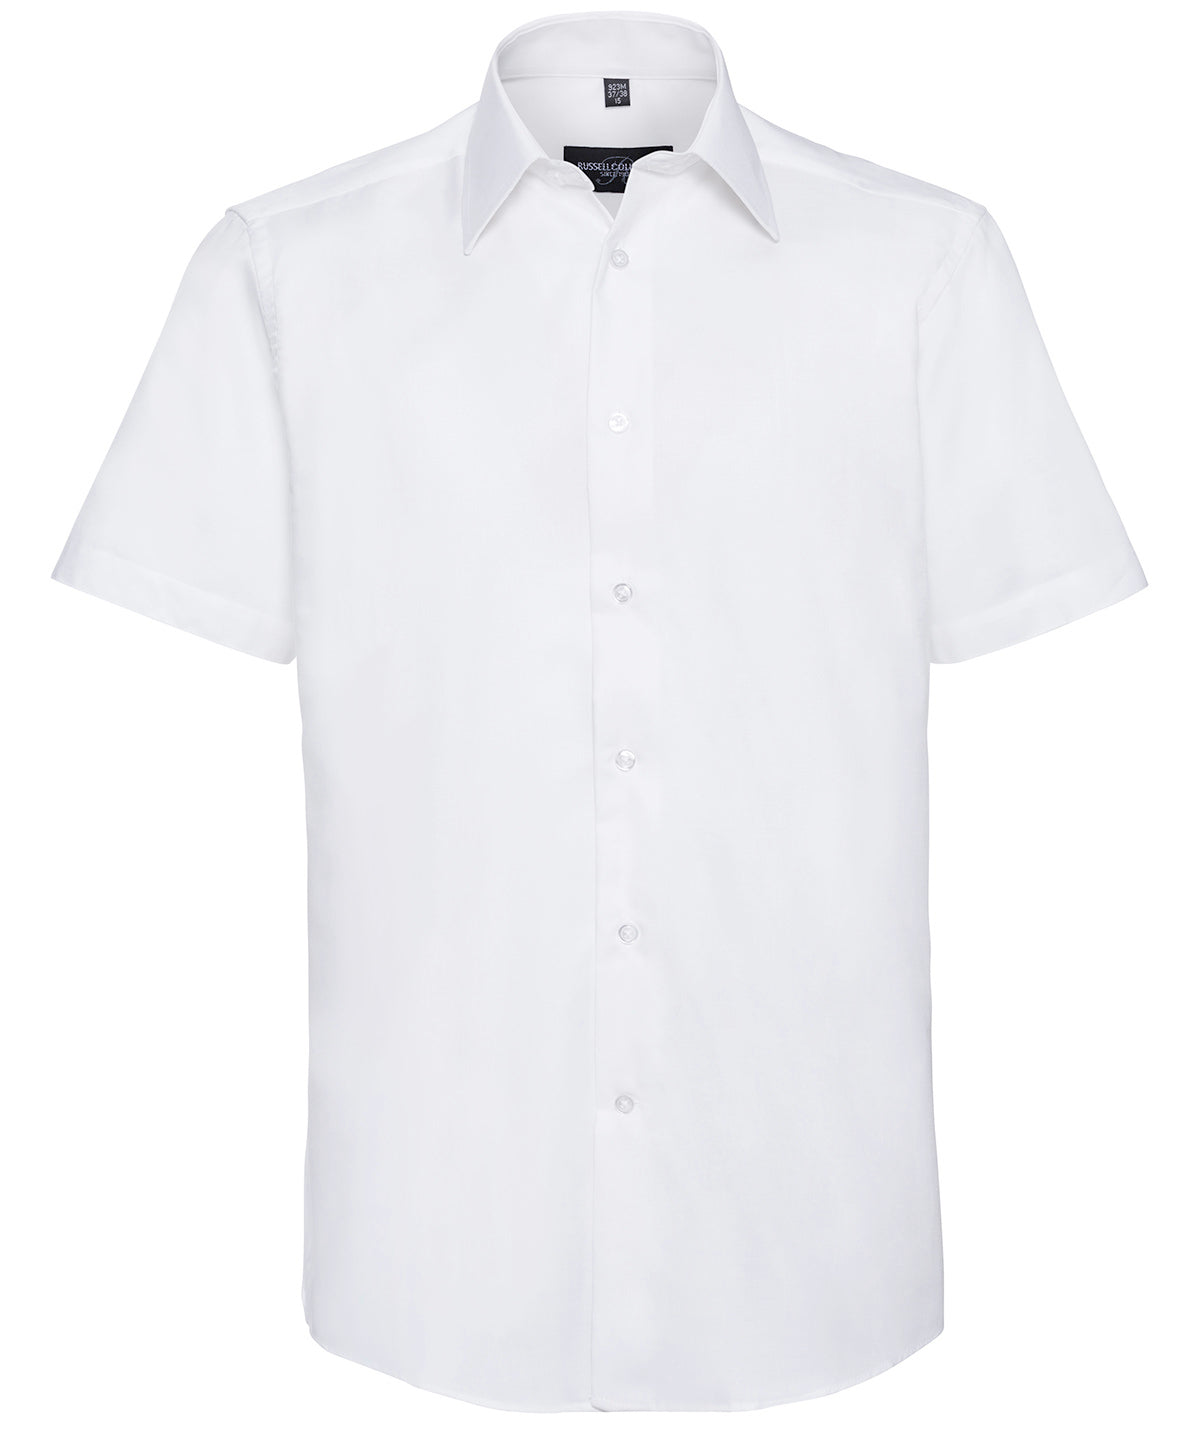 Bolir - Short Sleeve Easycare Tailored Oxford Shirt